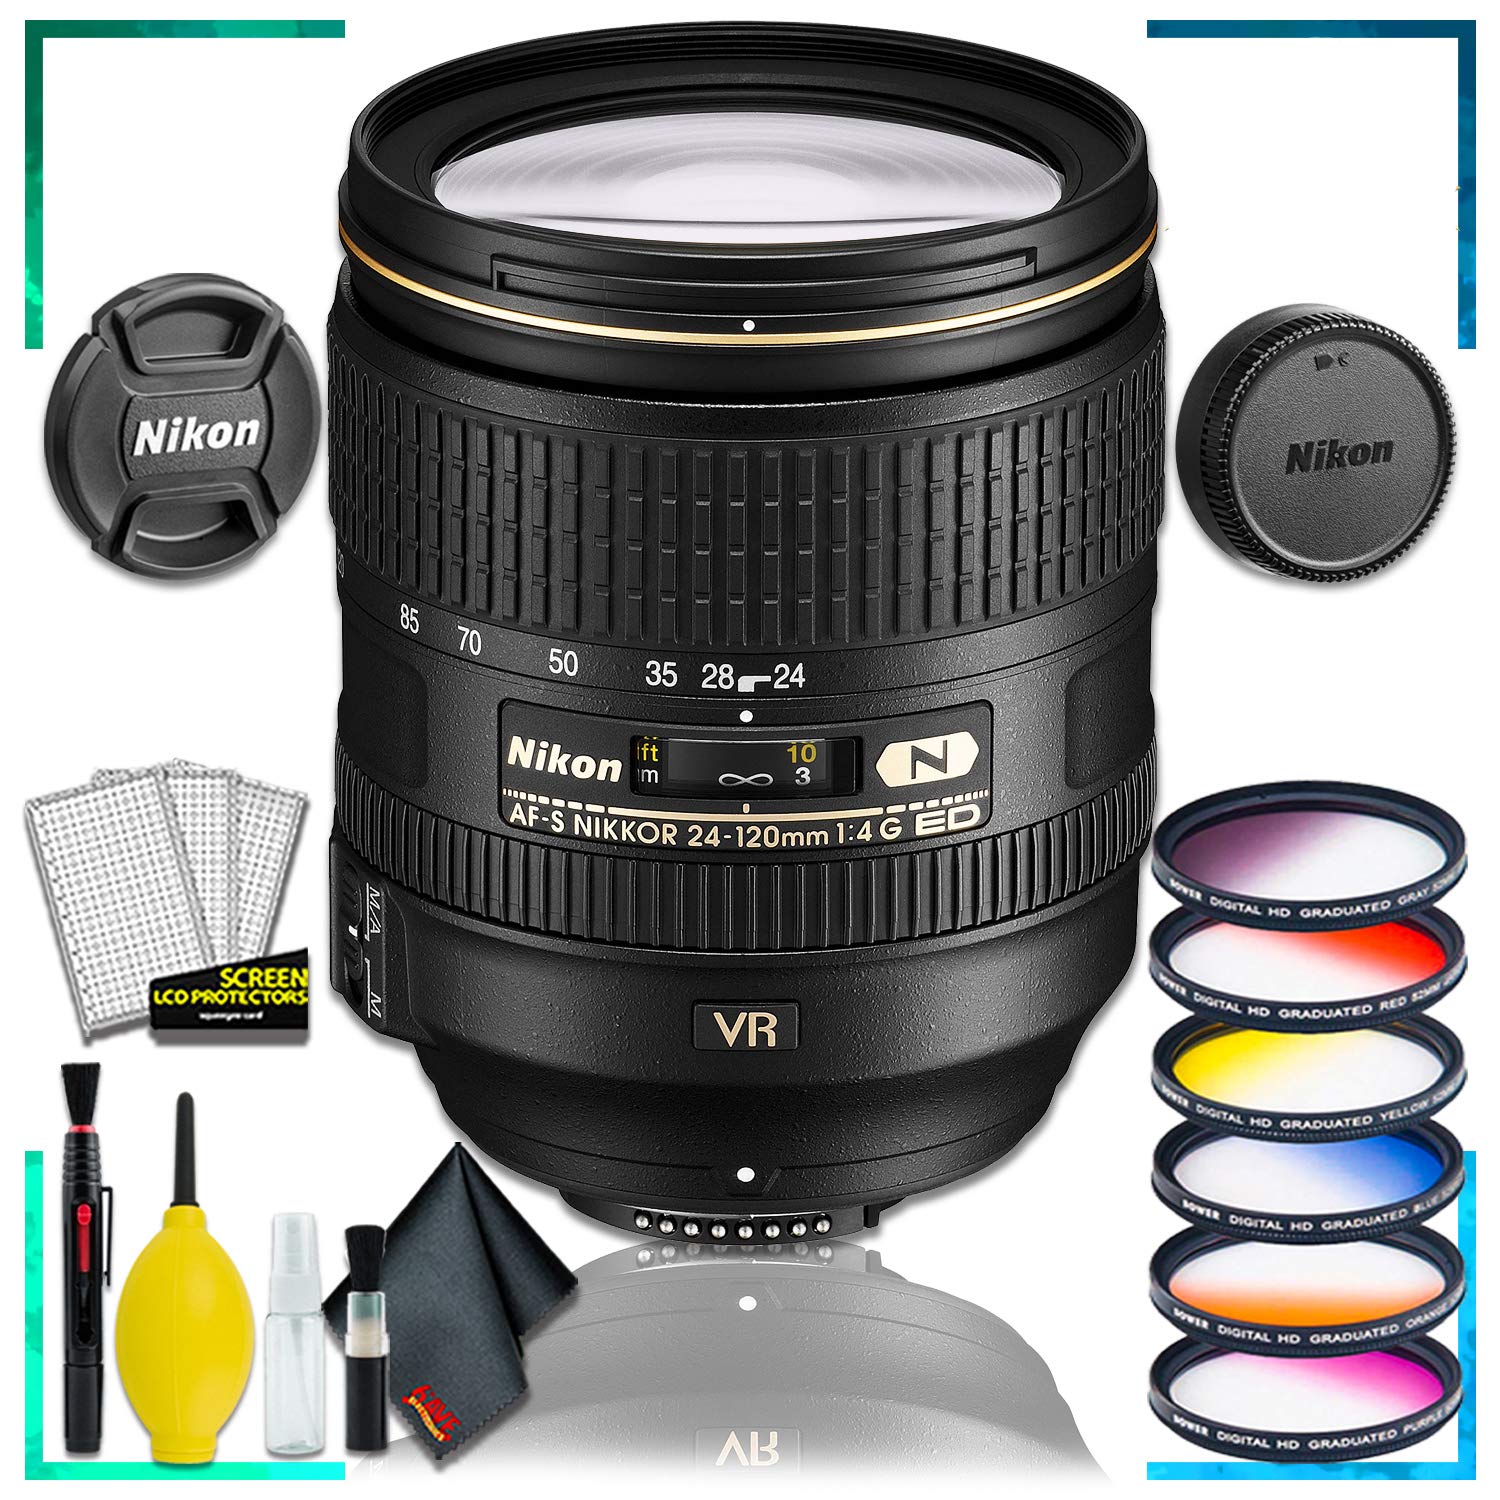 Nikon AF-S NIKKOR 24-120mm f.4G ED VR Lens (Intl Model) + Vivitar Graduated Color Lens Filter Kit + Cleaning Kit